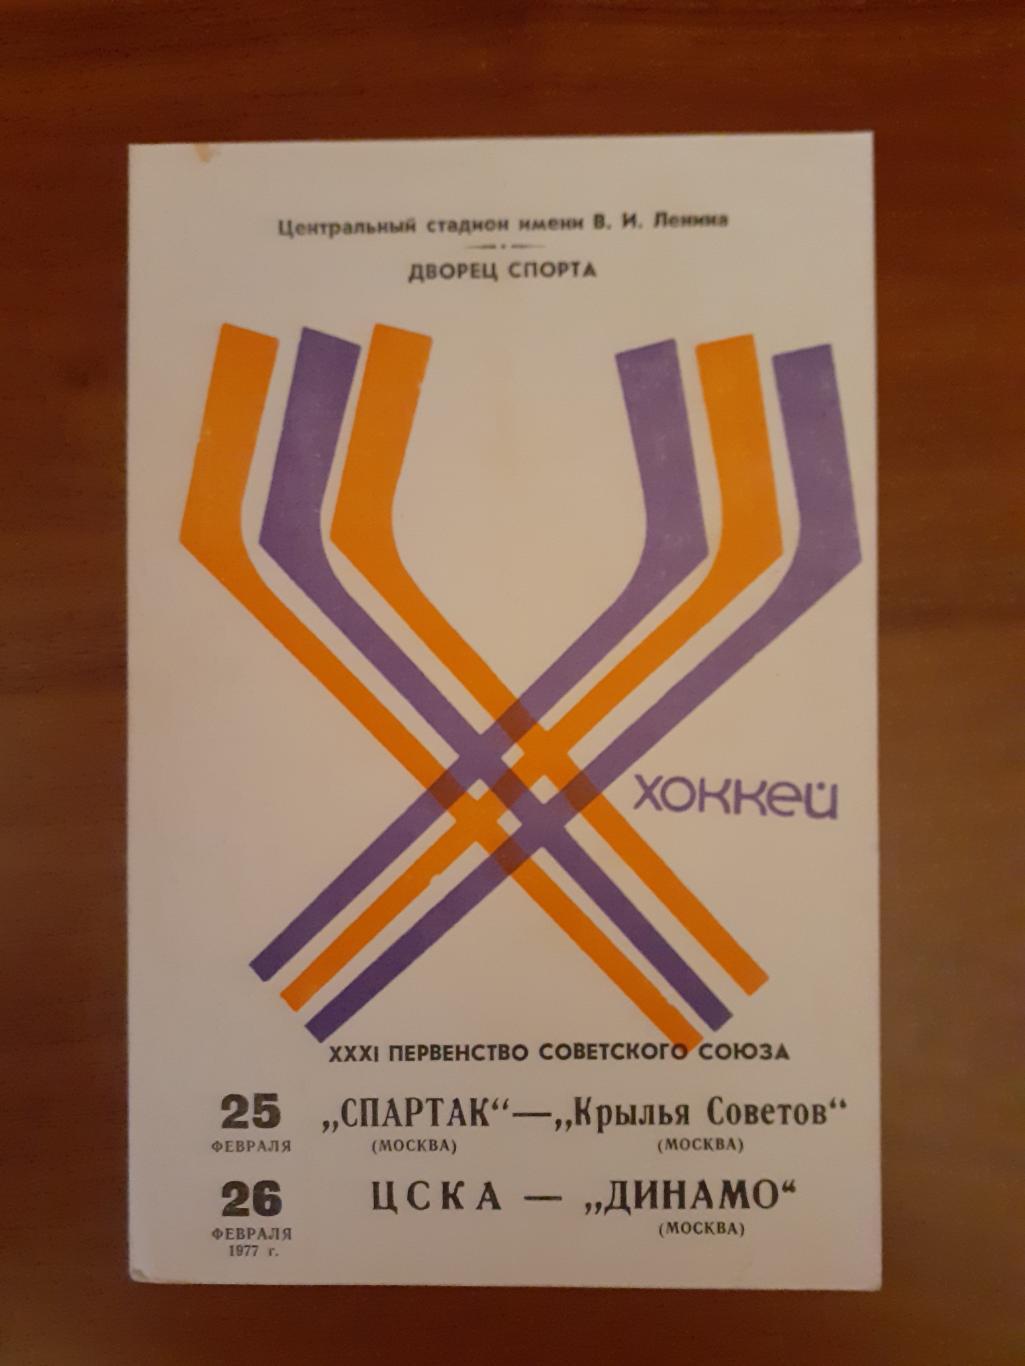 Динамо, Спартак, ЦСКА, Крылья Советов - 1977. 25-26 февраля.